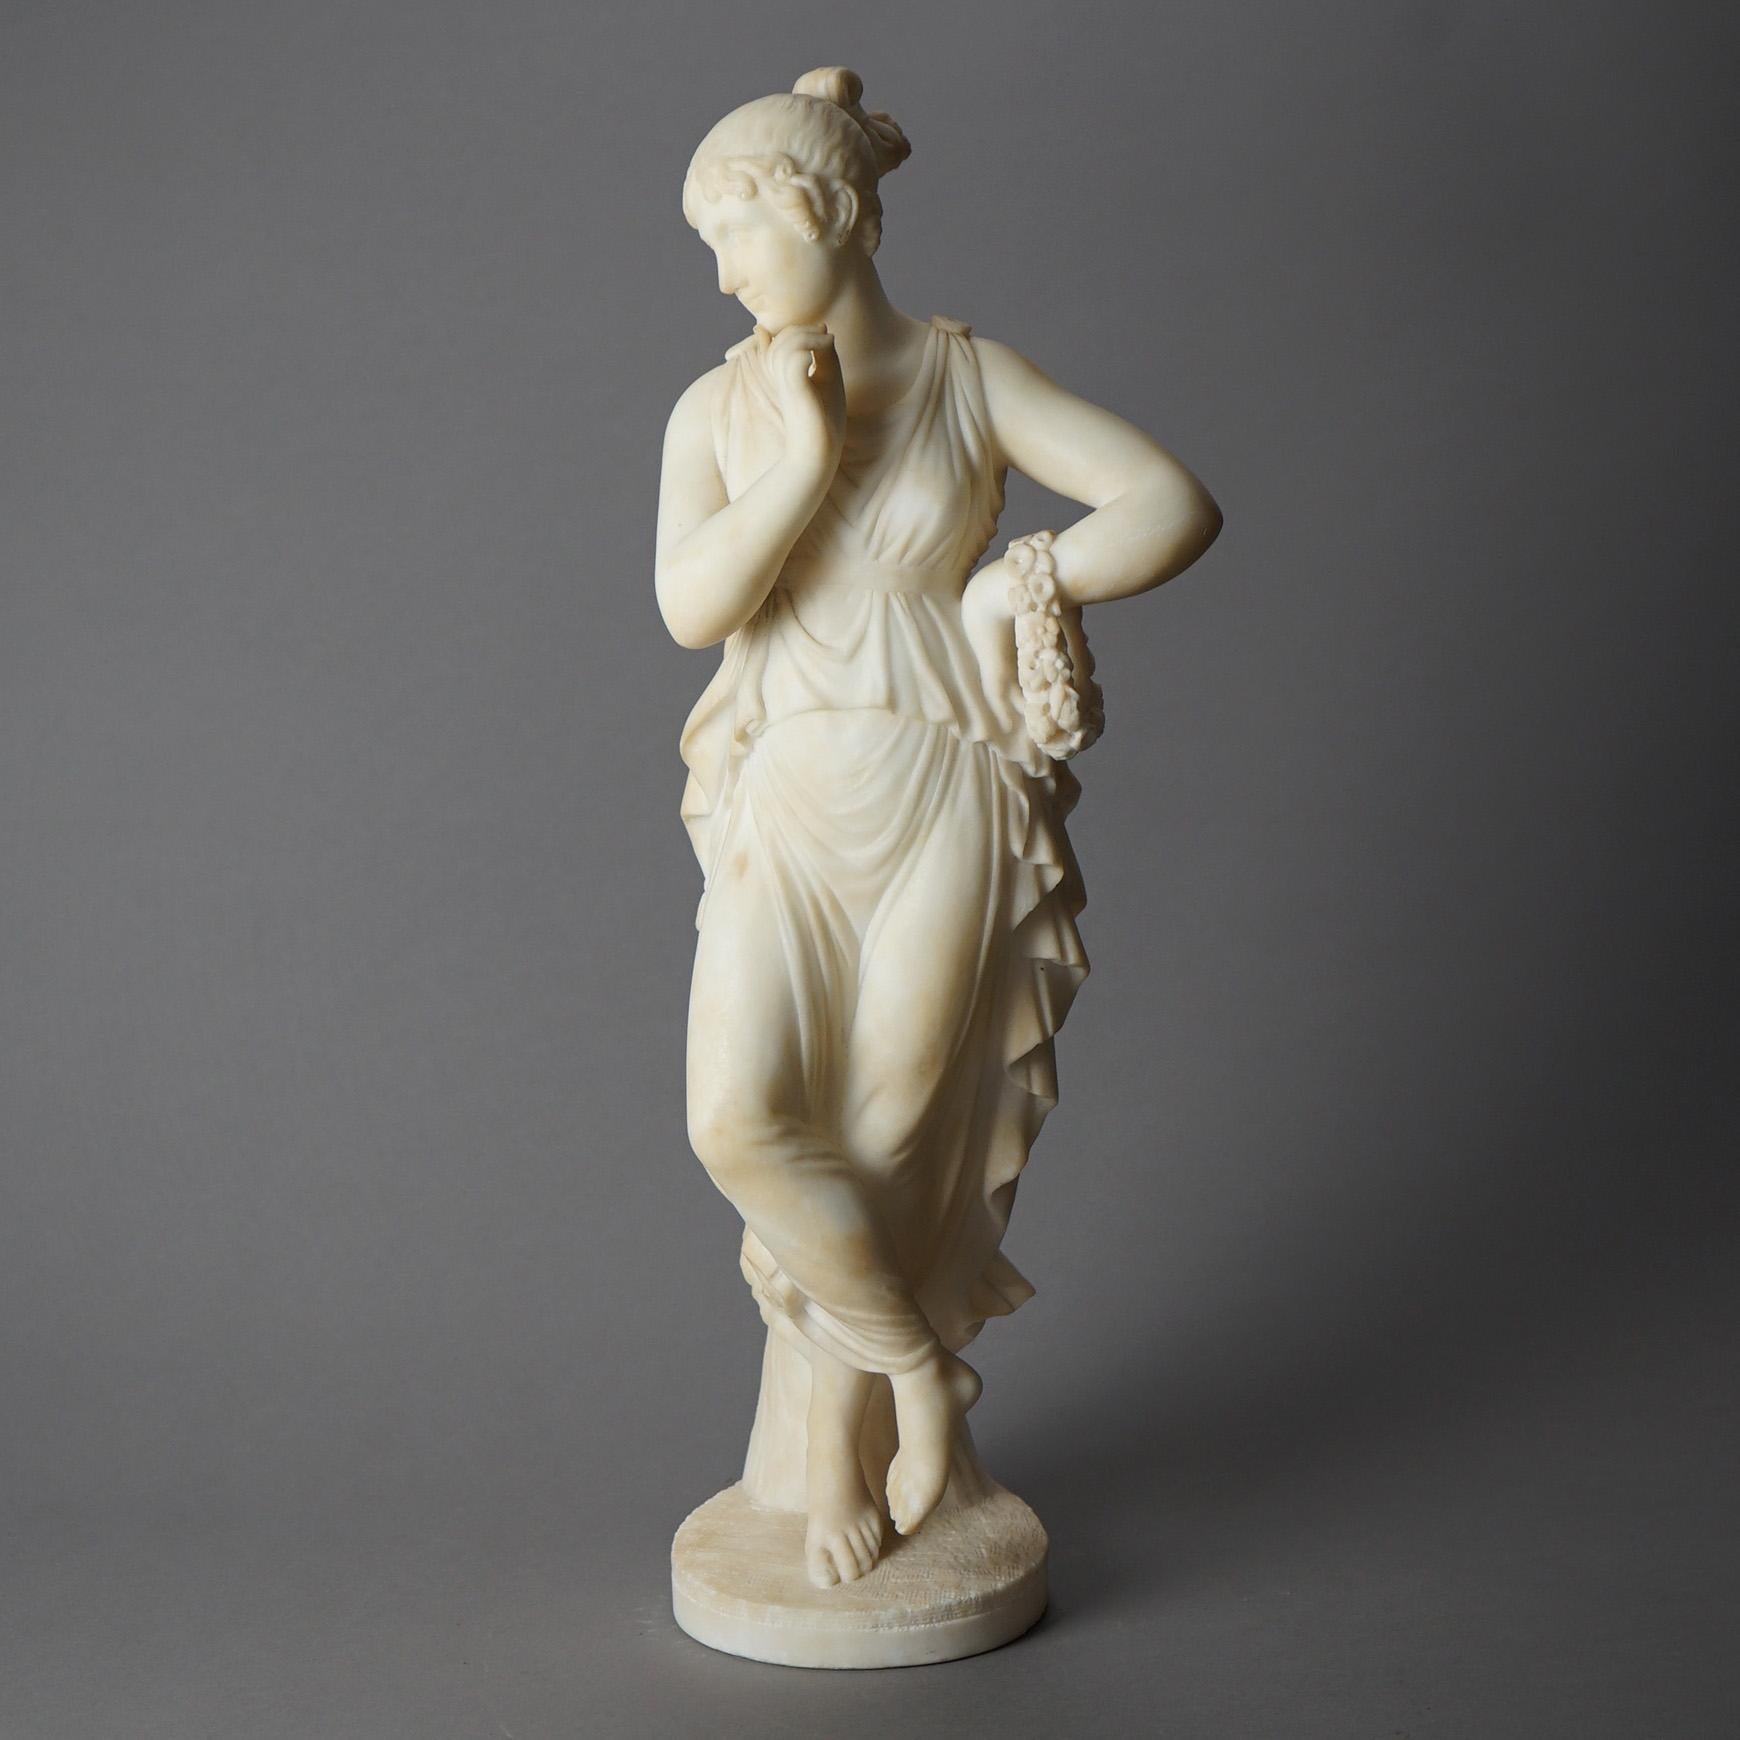 Antike italienische figurative Skulptur signiert P. Bazzanti, Florenz bietet geschnitzten Alabaster Klassische Frau, Künstlersignatur wie fotografiert, 19.

Maße - 22 